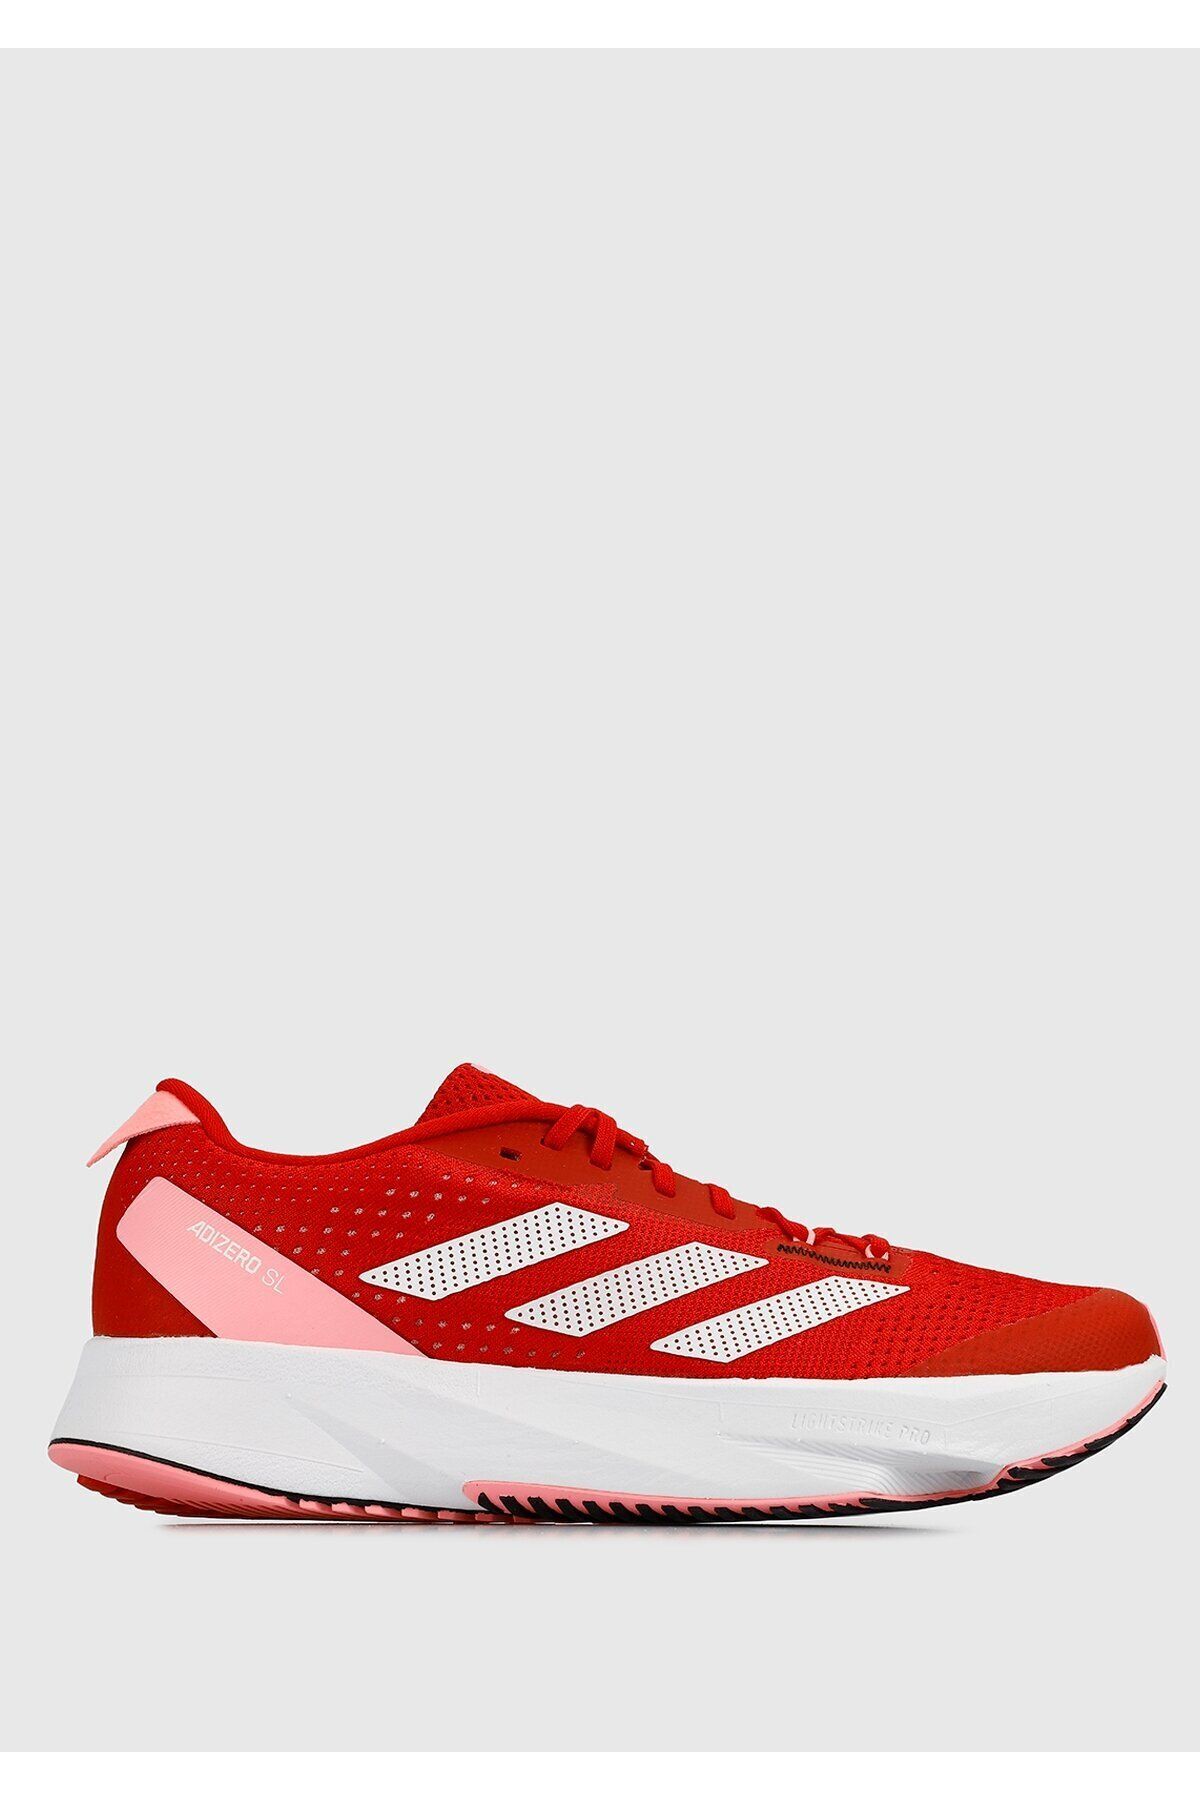 adidas Adızero Sl W Kırmızı Kadın Koşu Ayakkabısı Hq1337